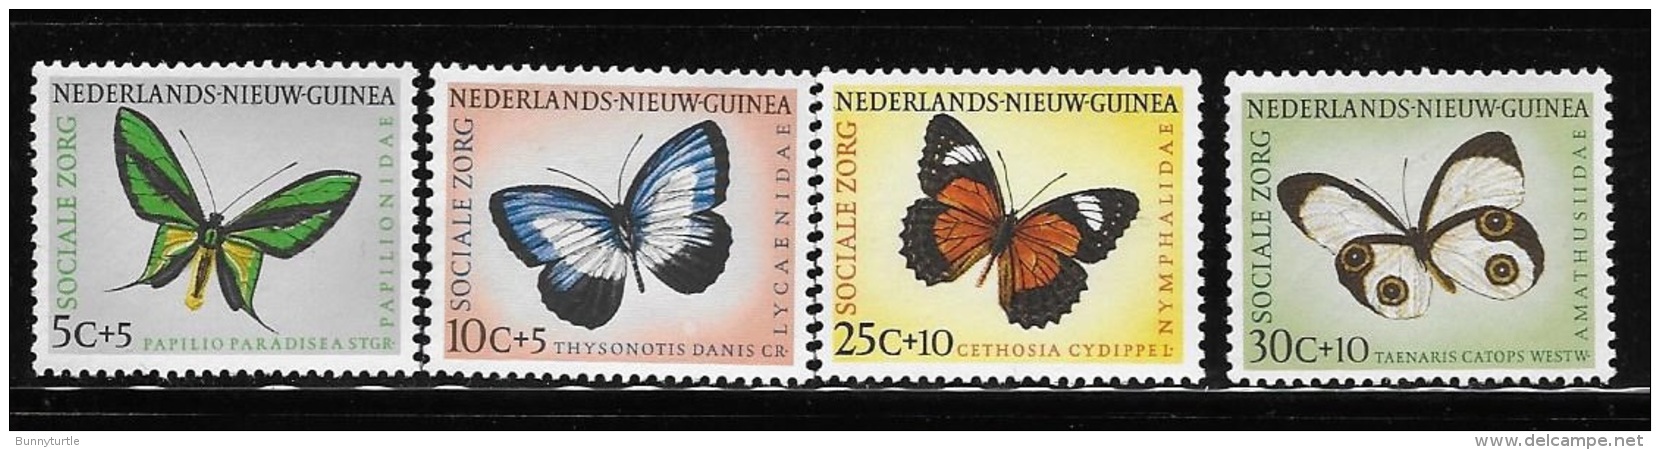 Netherlands New Guinea 1960 Butterflies MNH/MLH - Netherlands New Guinea